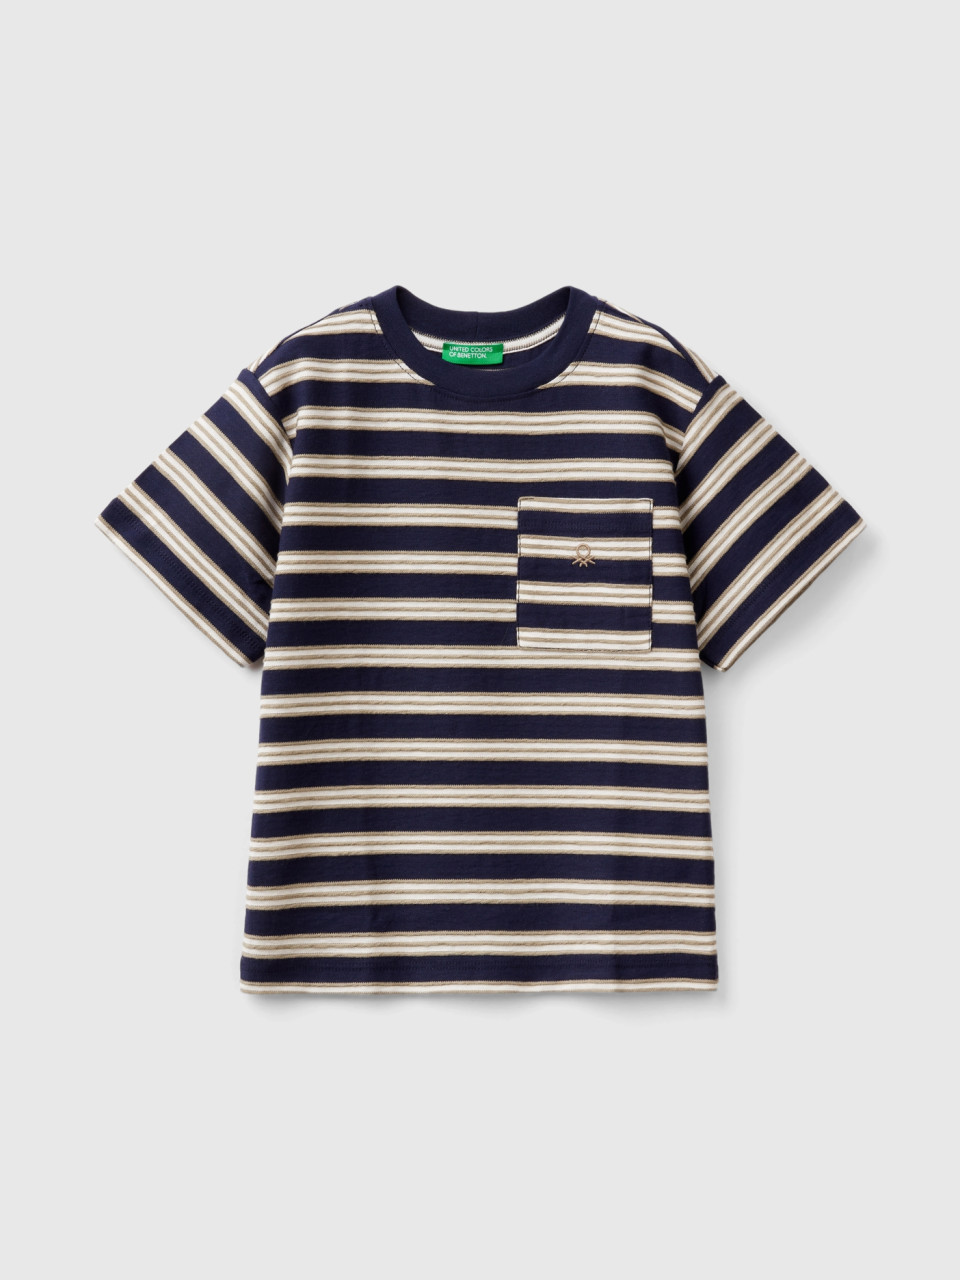 Benetton, Striped T-shirt With Pocket, Dark Blue, Kids